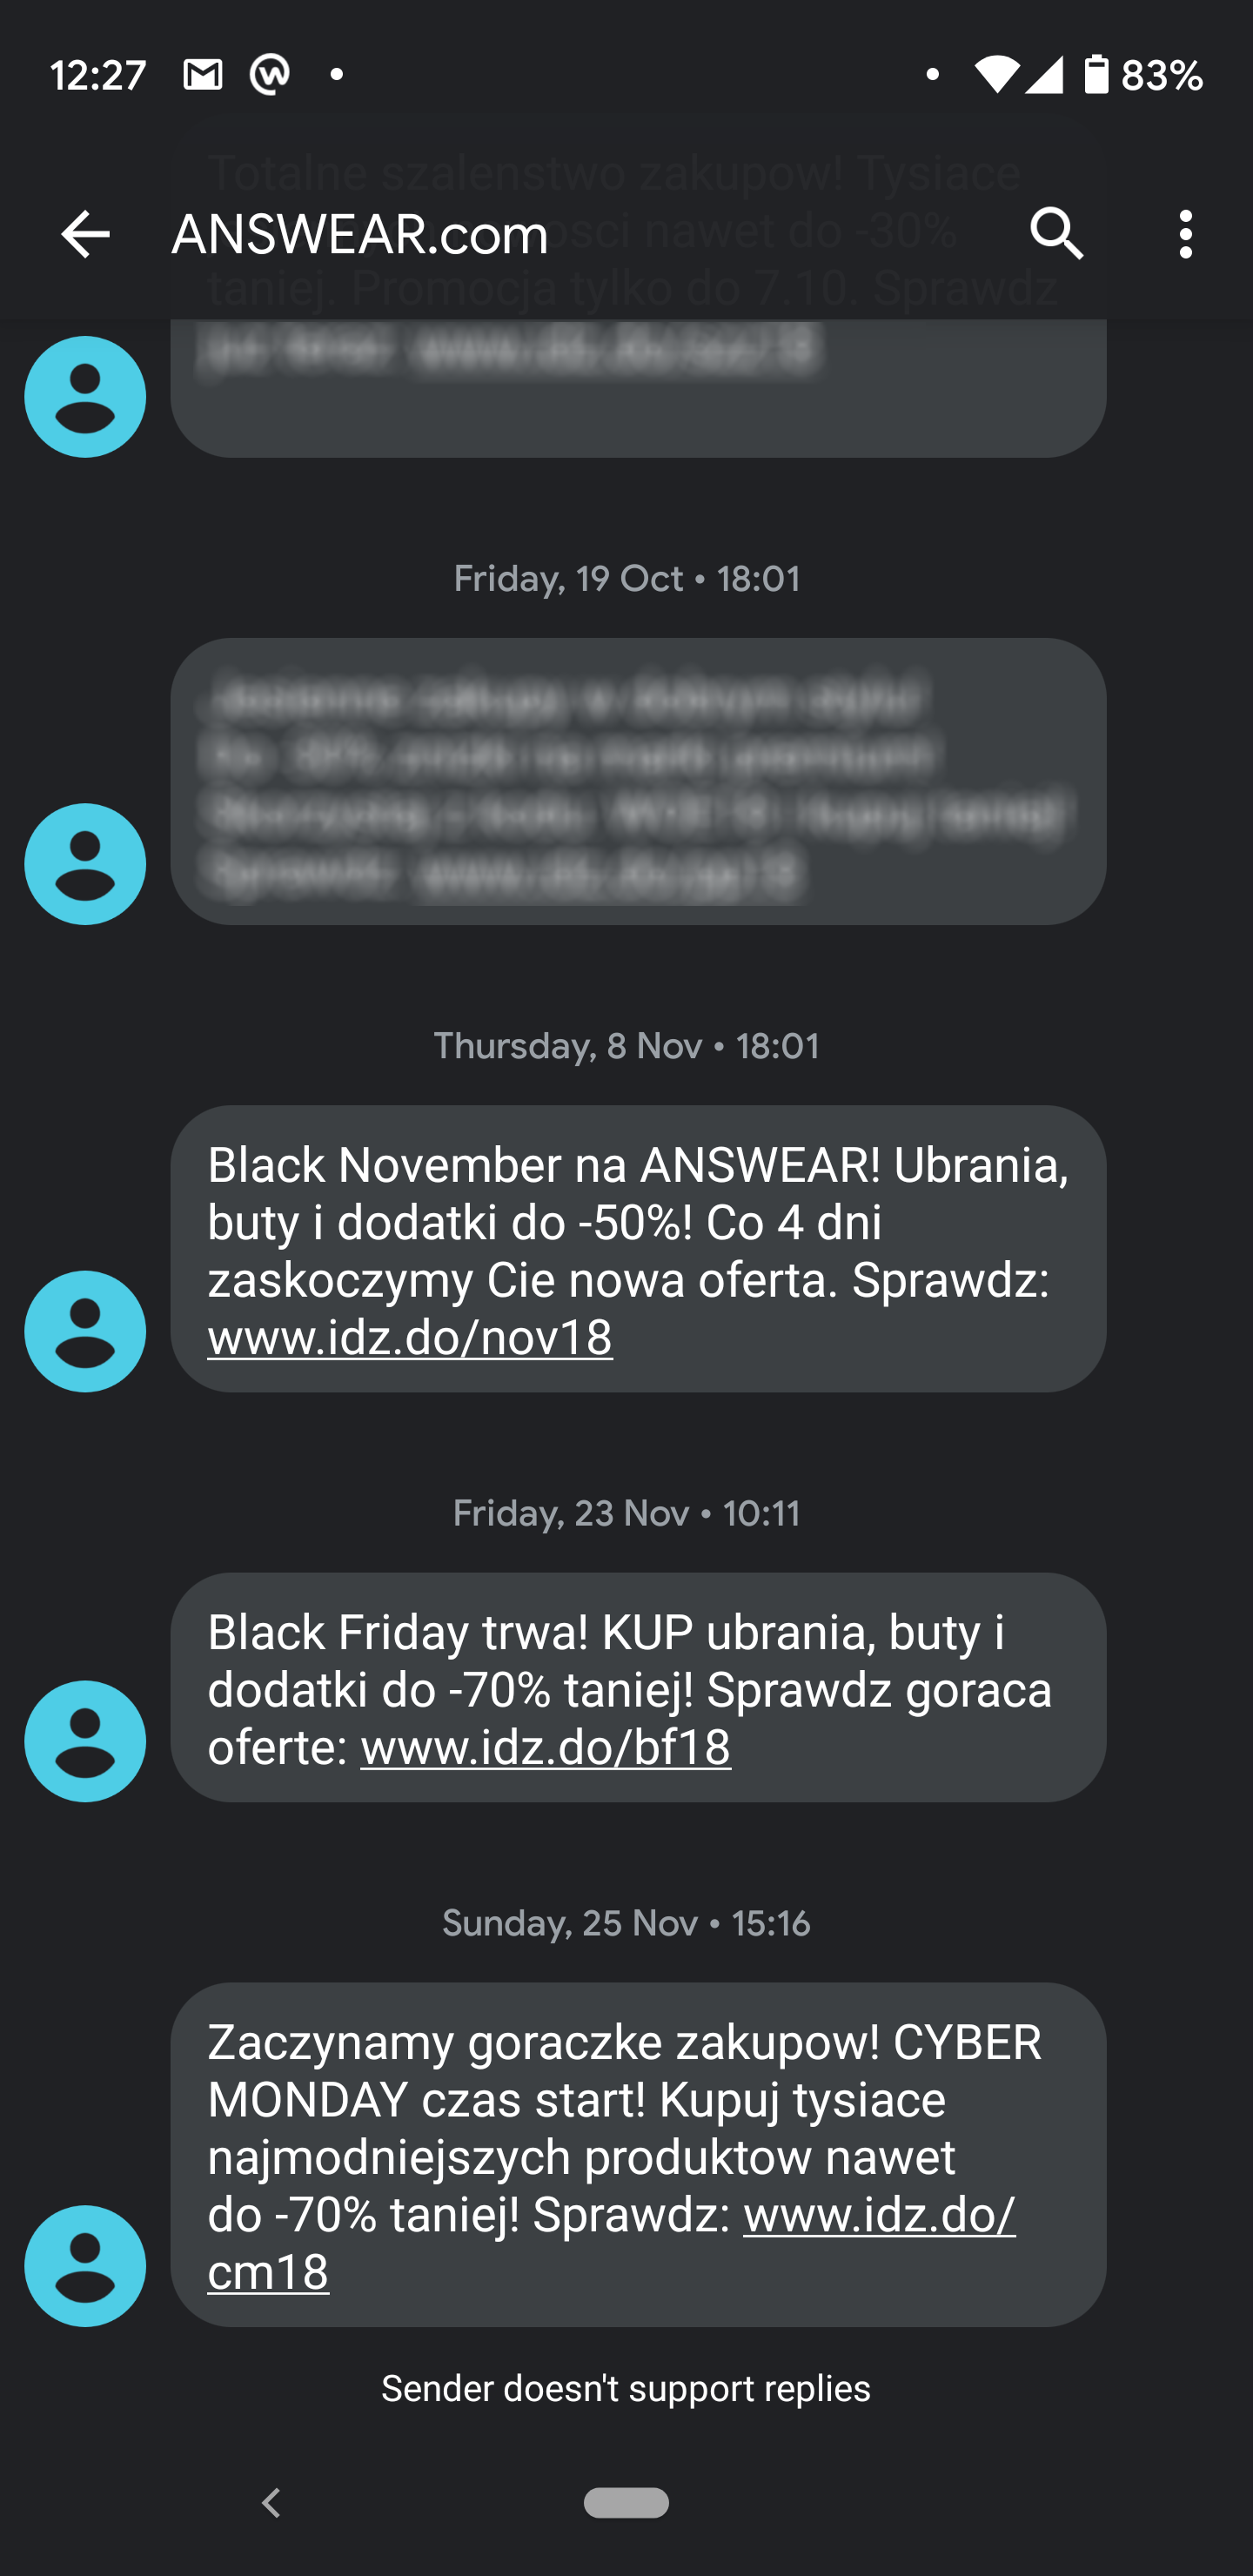 Kampania SMS wysłana przez Answear.com z okazji Black Friday